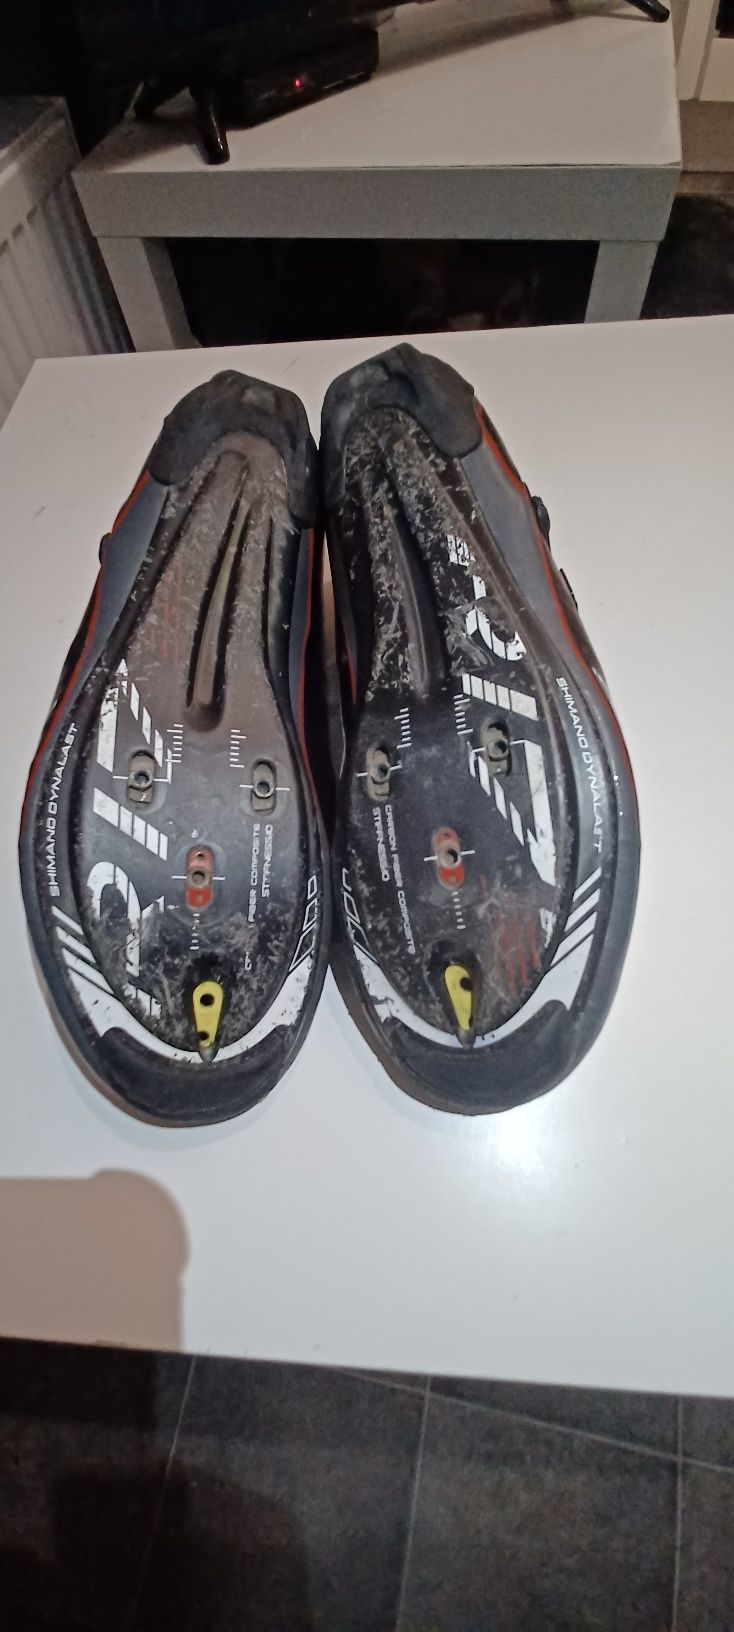 Karbonowe buty SPD szosowe Shimano R171 rozm 43